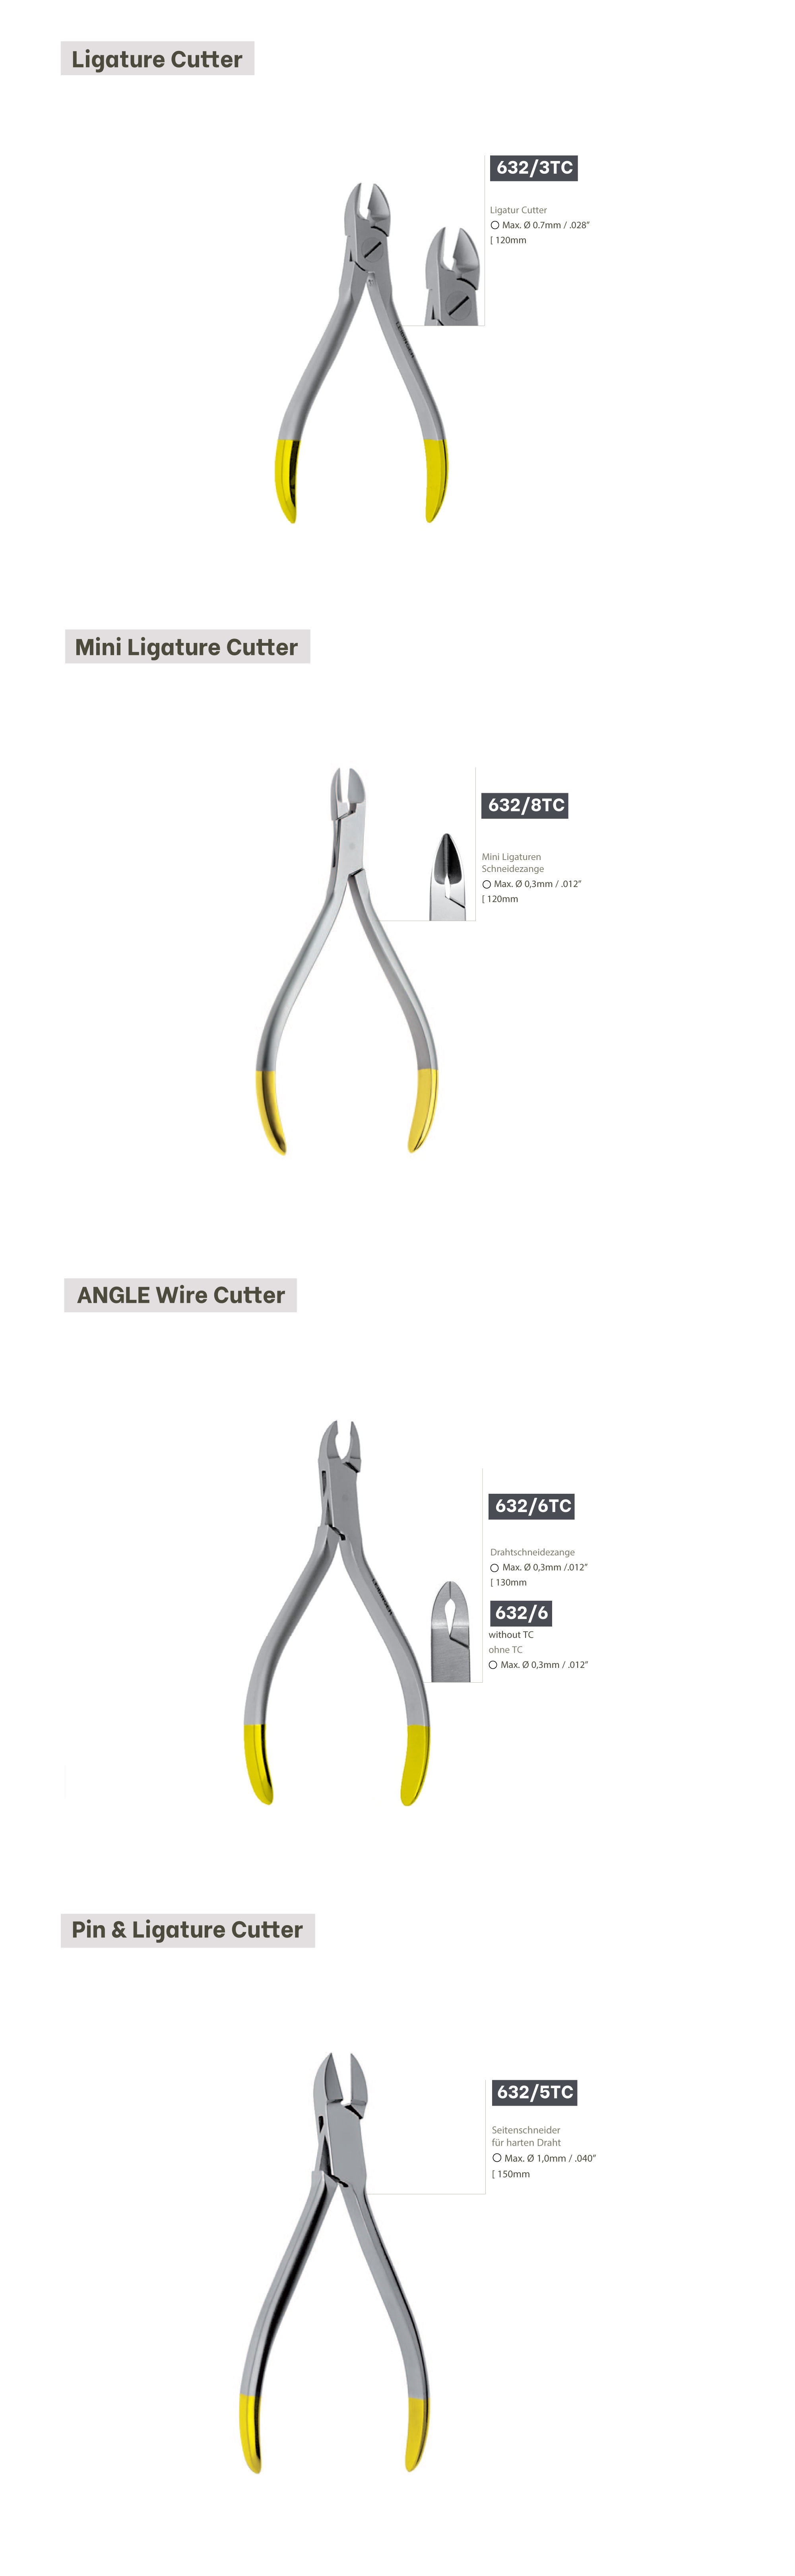 Pin&Ligature Cutter